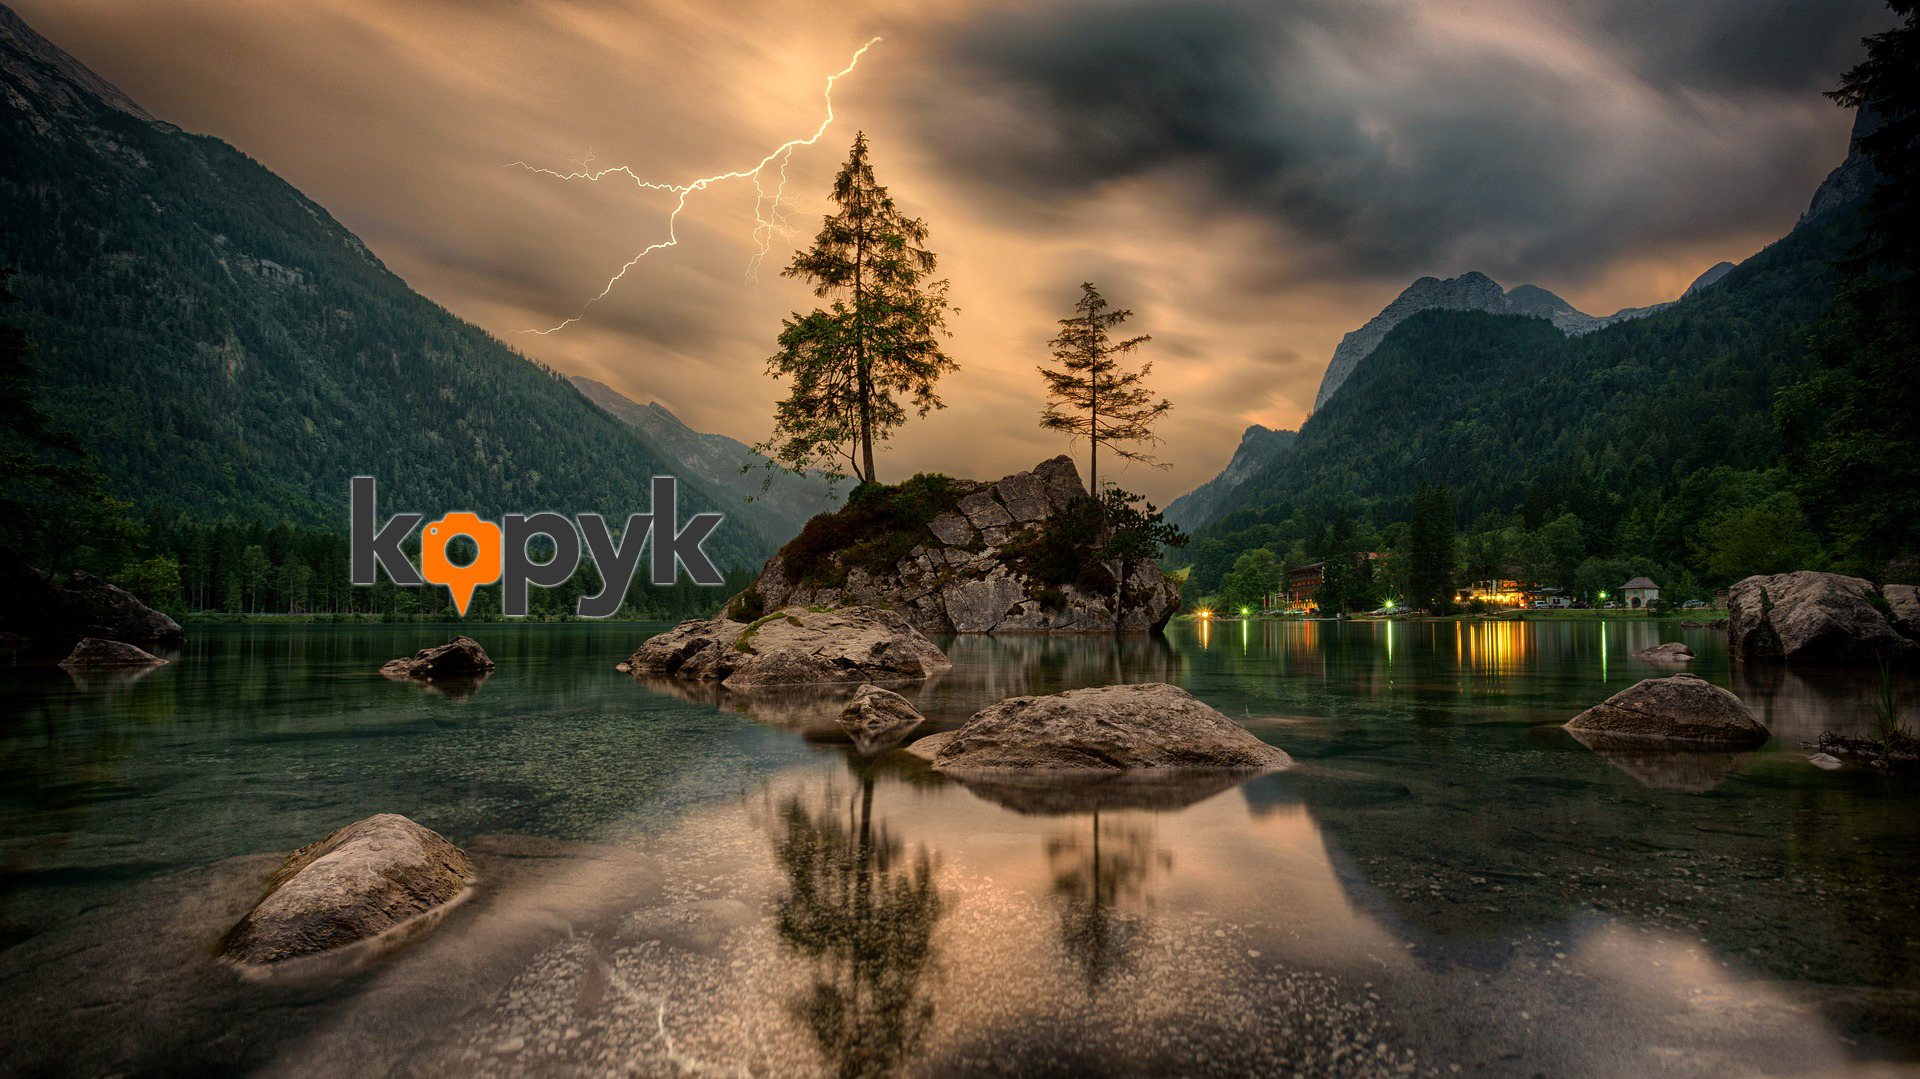 Kopyk: La app que combina viajes y fotografía para proponer una nueva forma de hacer turismo.